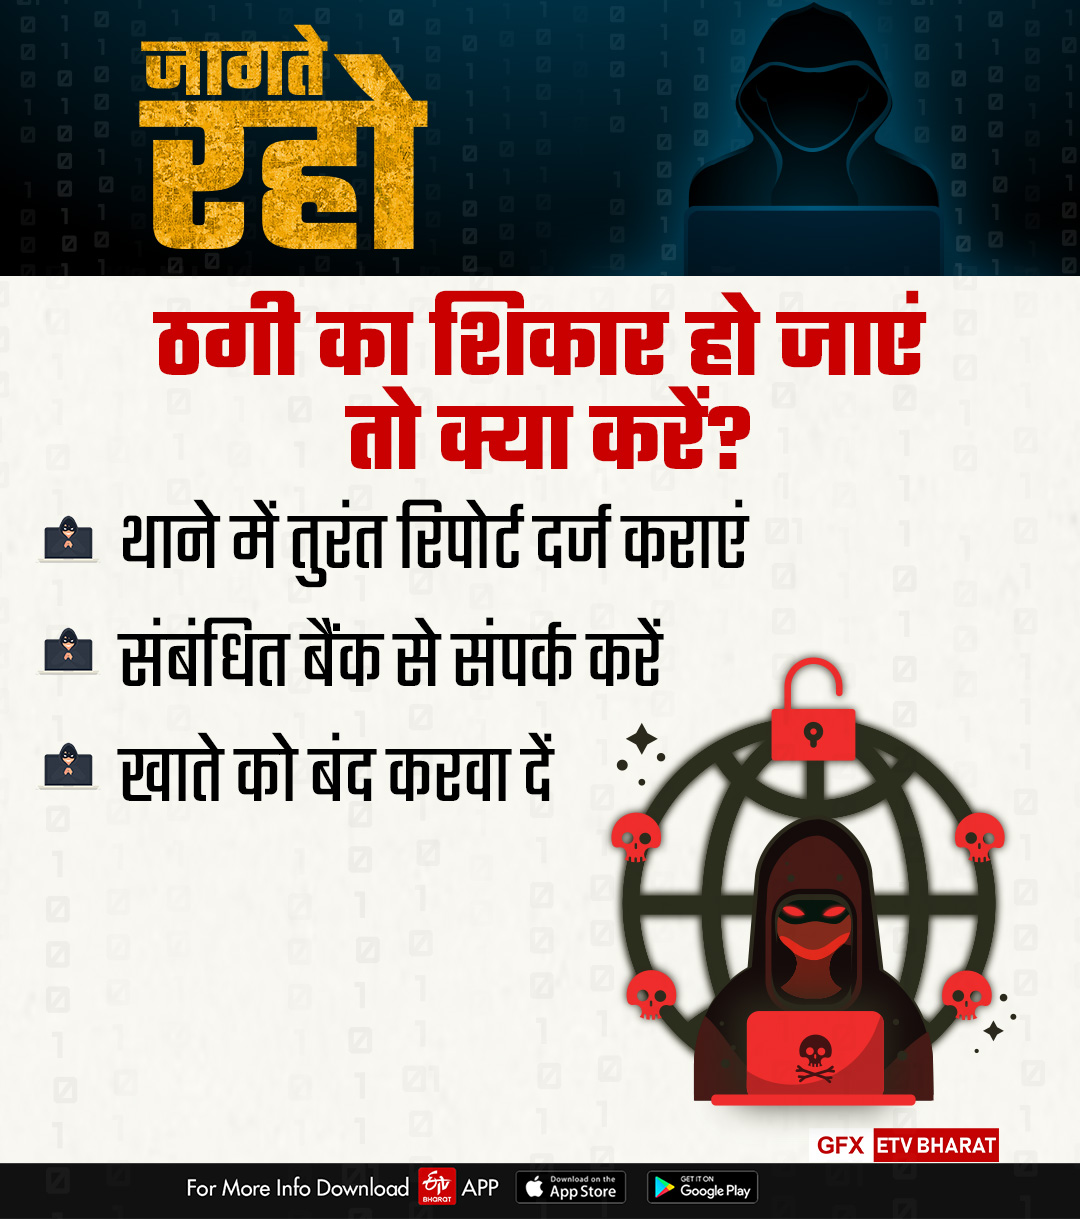 Rajasthan Cyber Crime, साइबर ठगी का शिकार